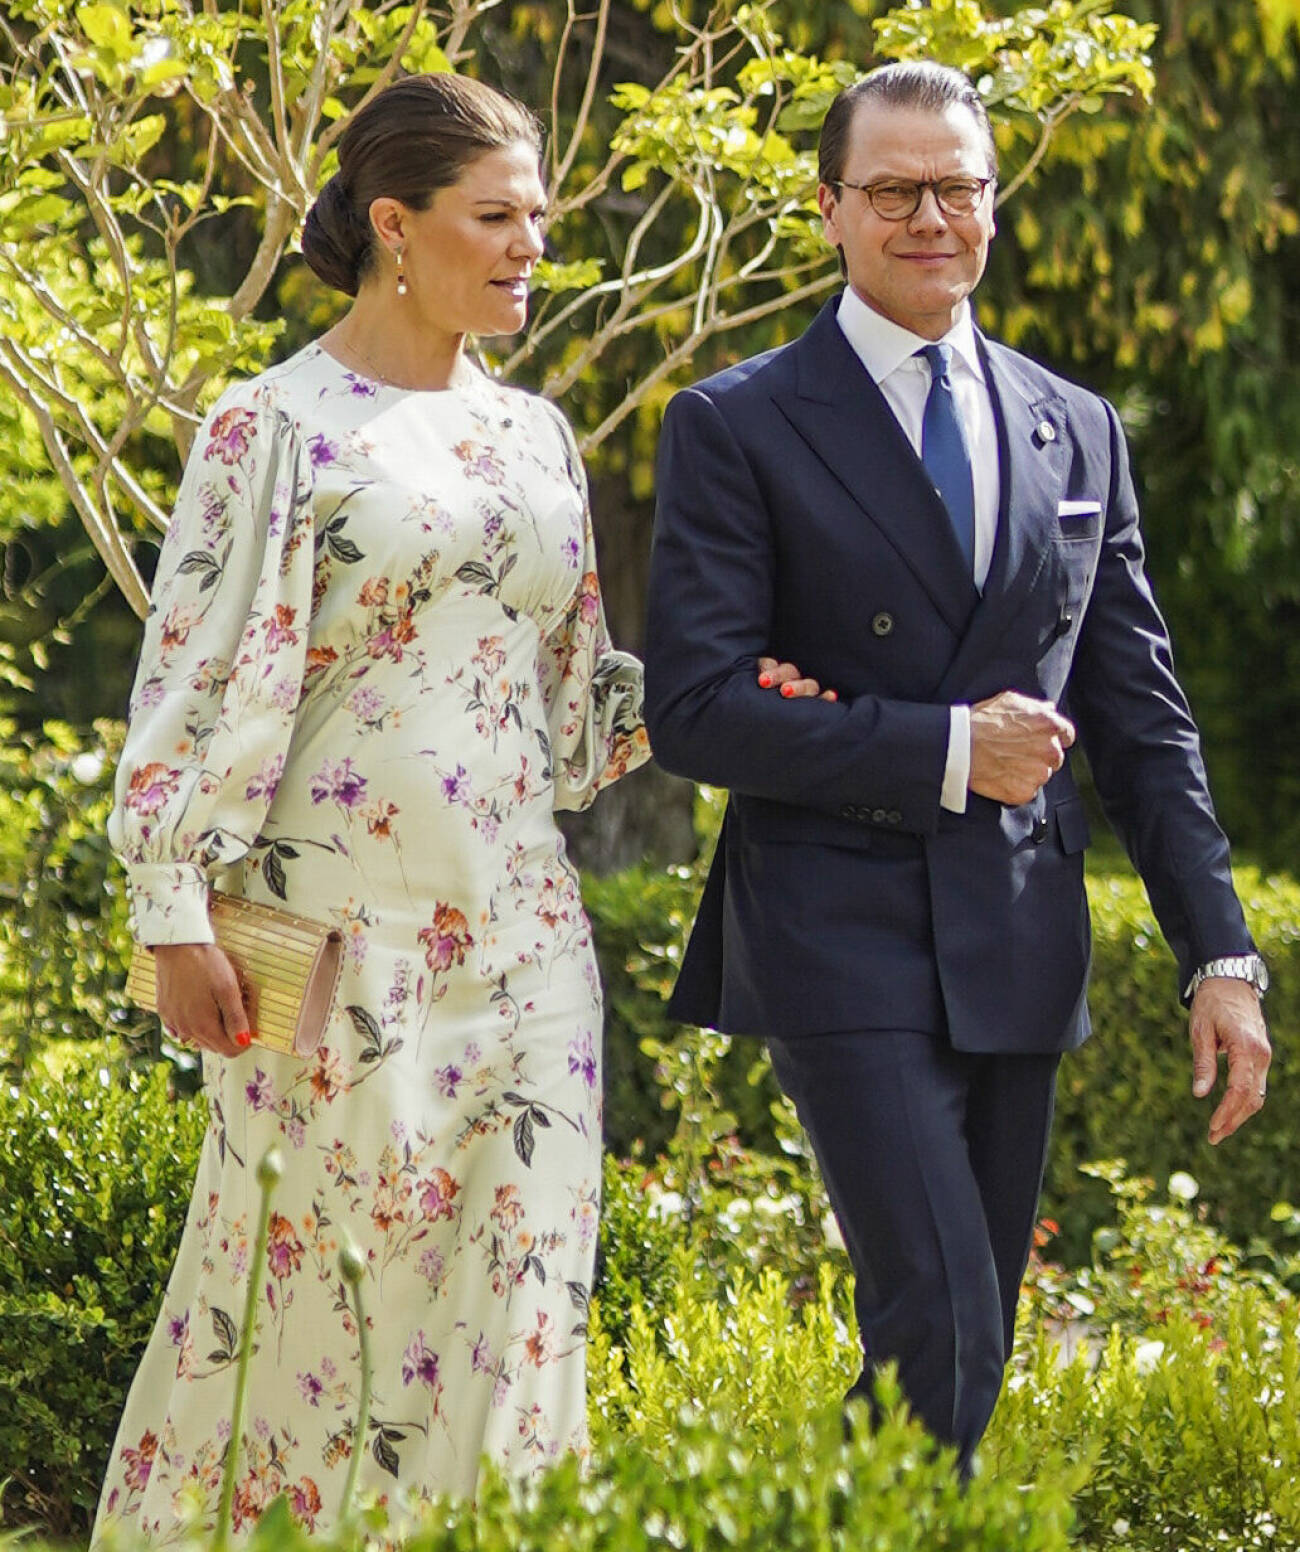 Bröllop i Jordanien 2023: Kronprinsessan Victoria klädd i en blommig klänning från By Malina